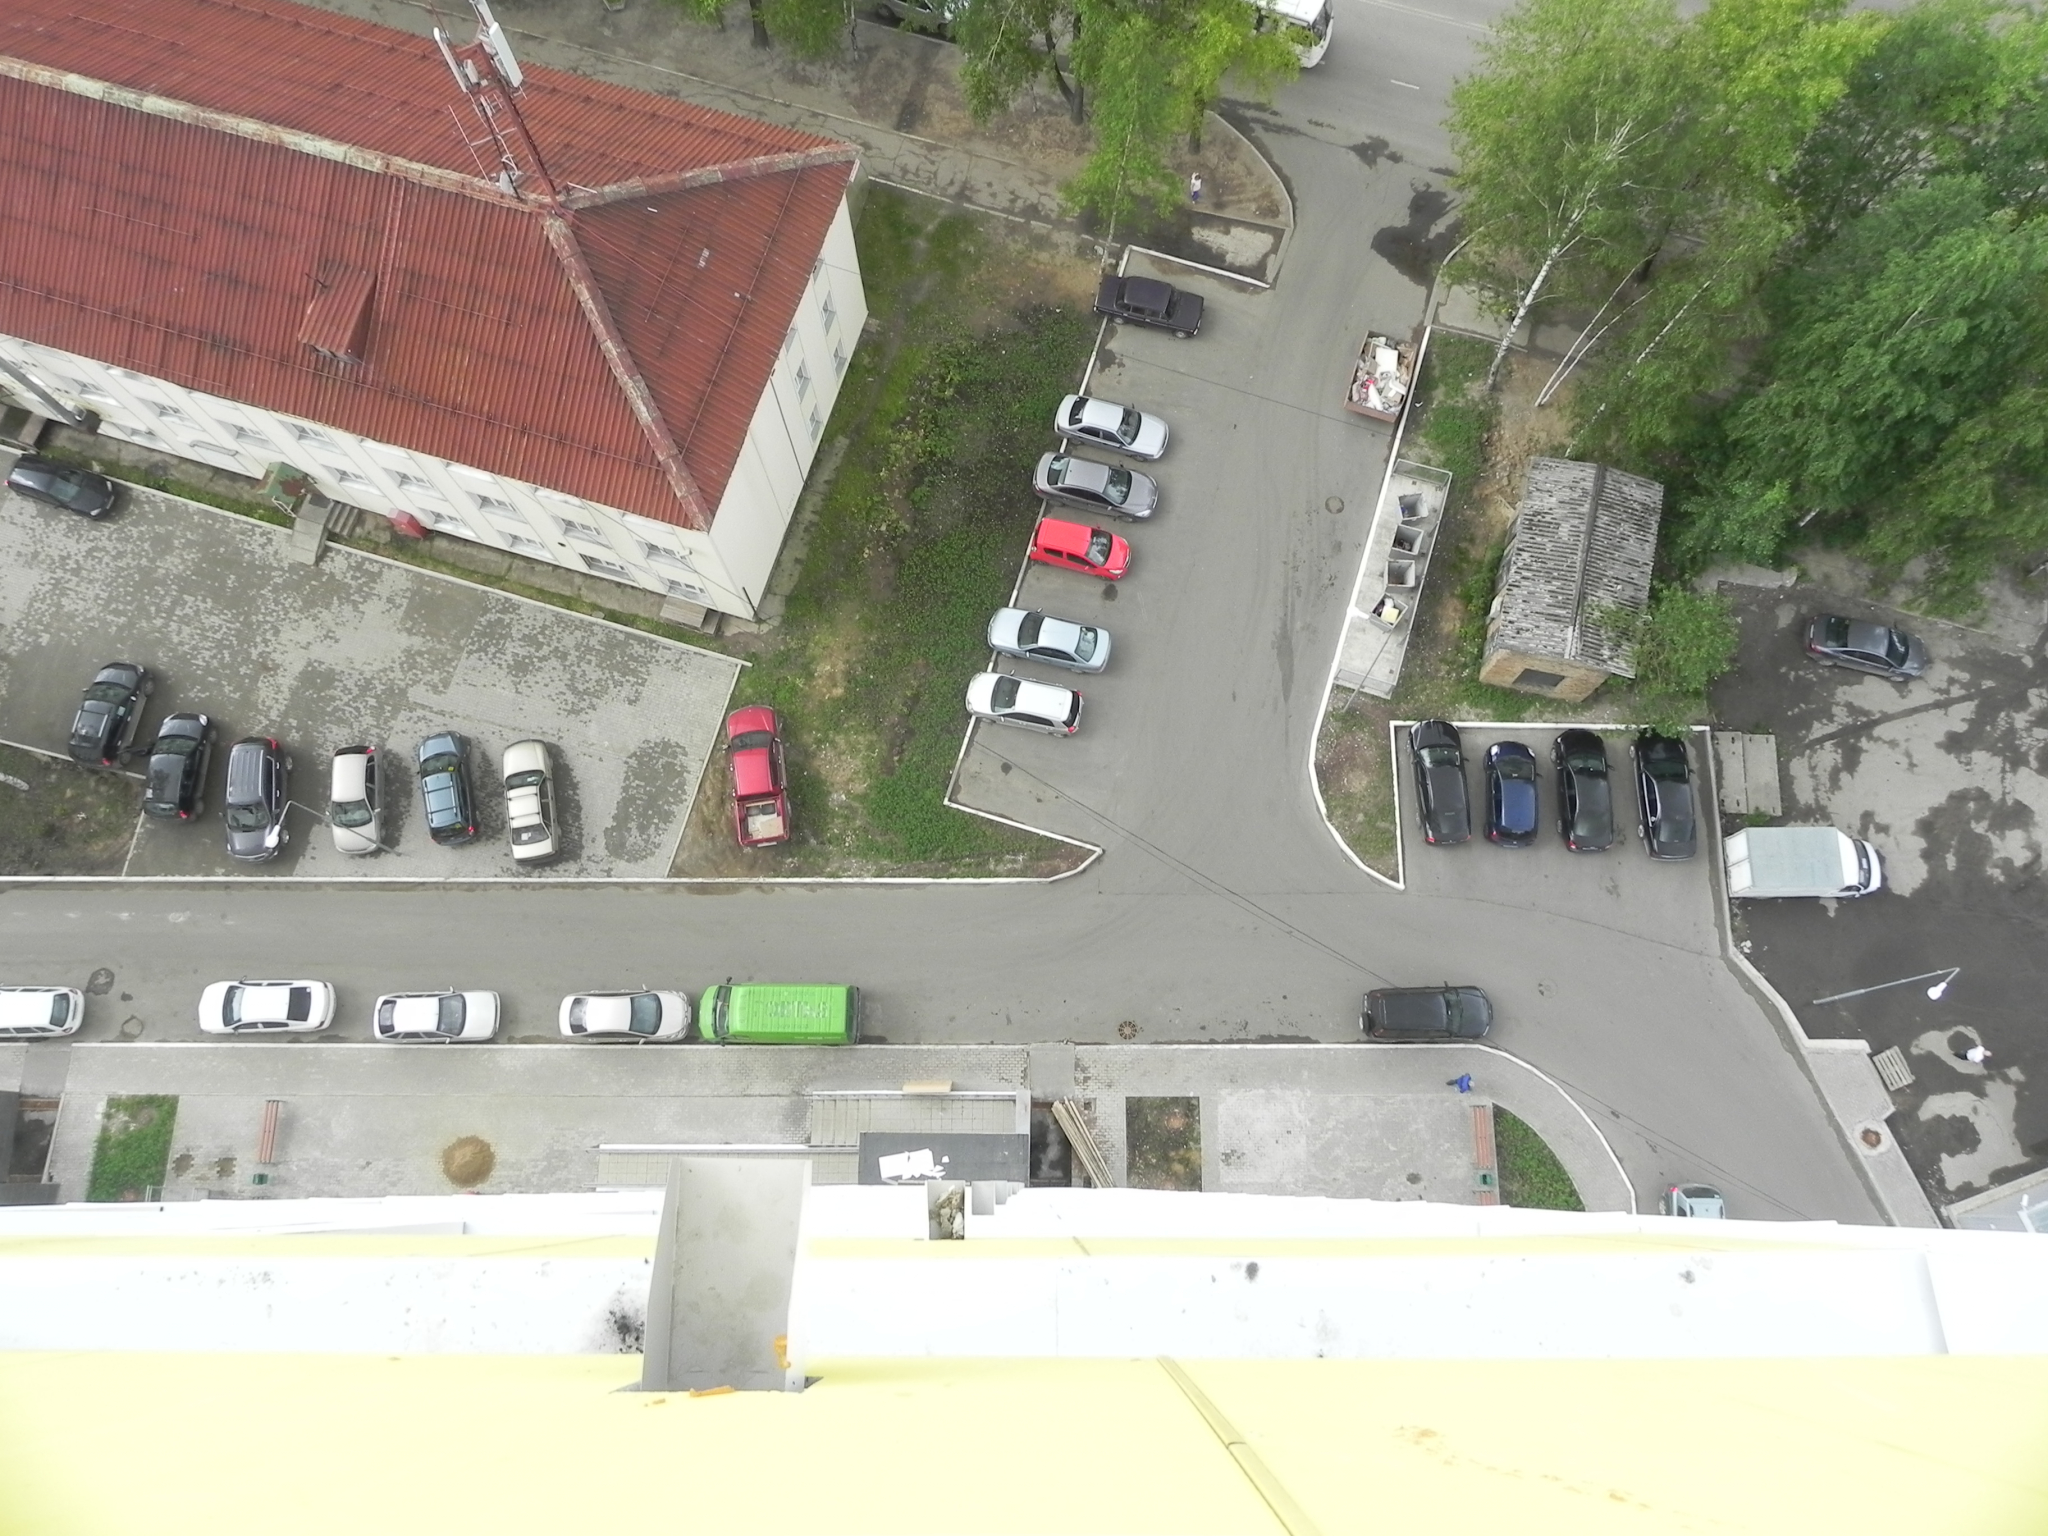 В Пензенской области из окна многоэтажки выпала девушка: СК проводит проверку